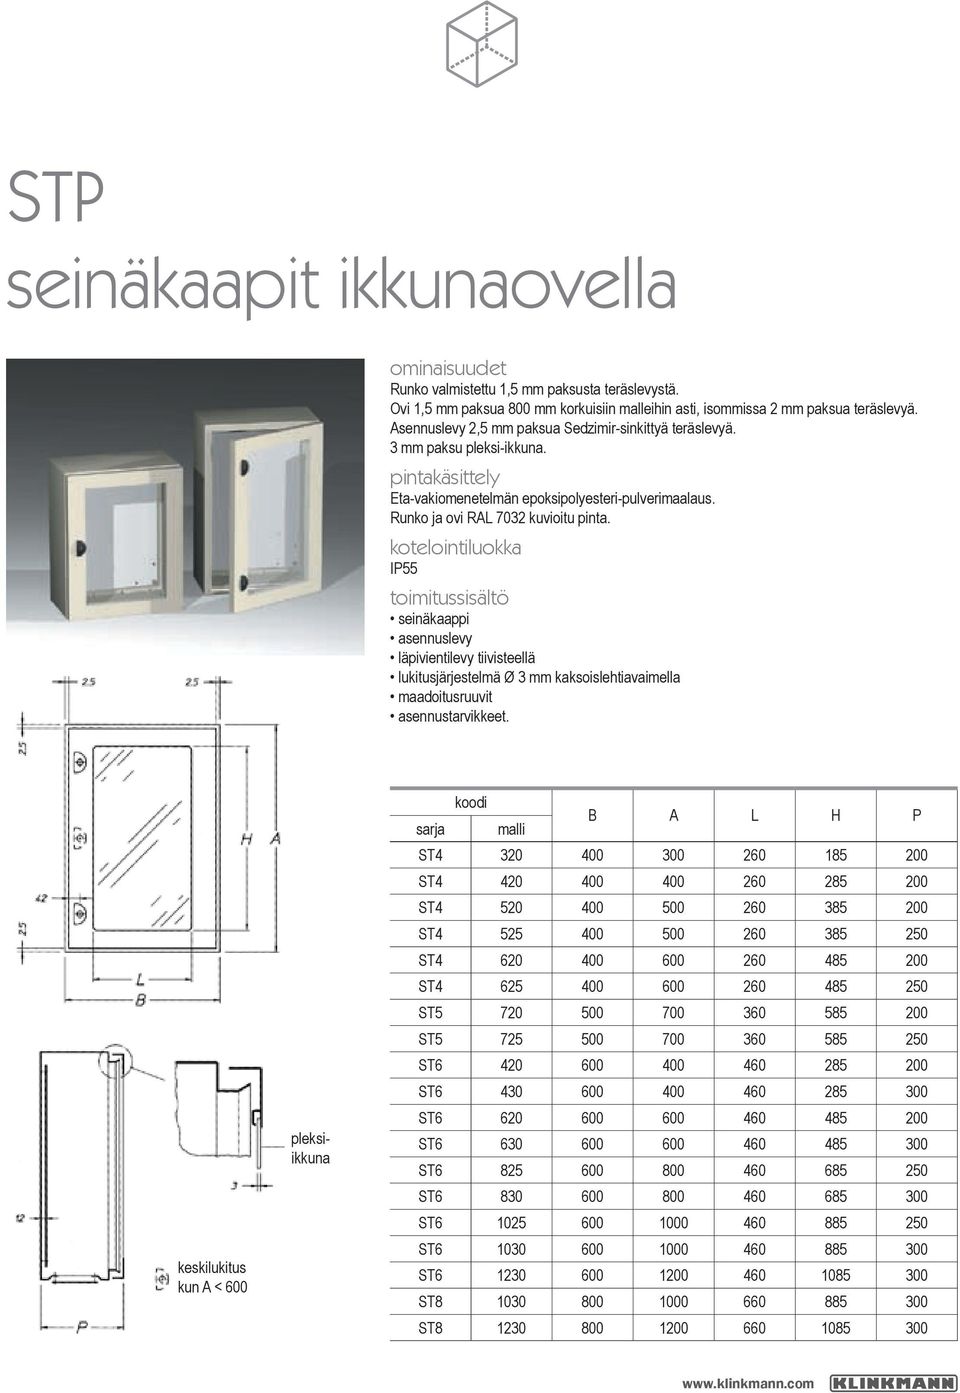 kotelointiluokka IP55 toimitussisältö seinäkaappi asennuslevy läpivientilevy tiivisteellä lukitusjärjestelmä Ø 3 mm kaksoislehtiavaimella maadoitusruuvit asennustarvikkeet.